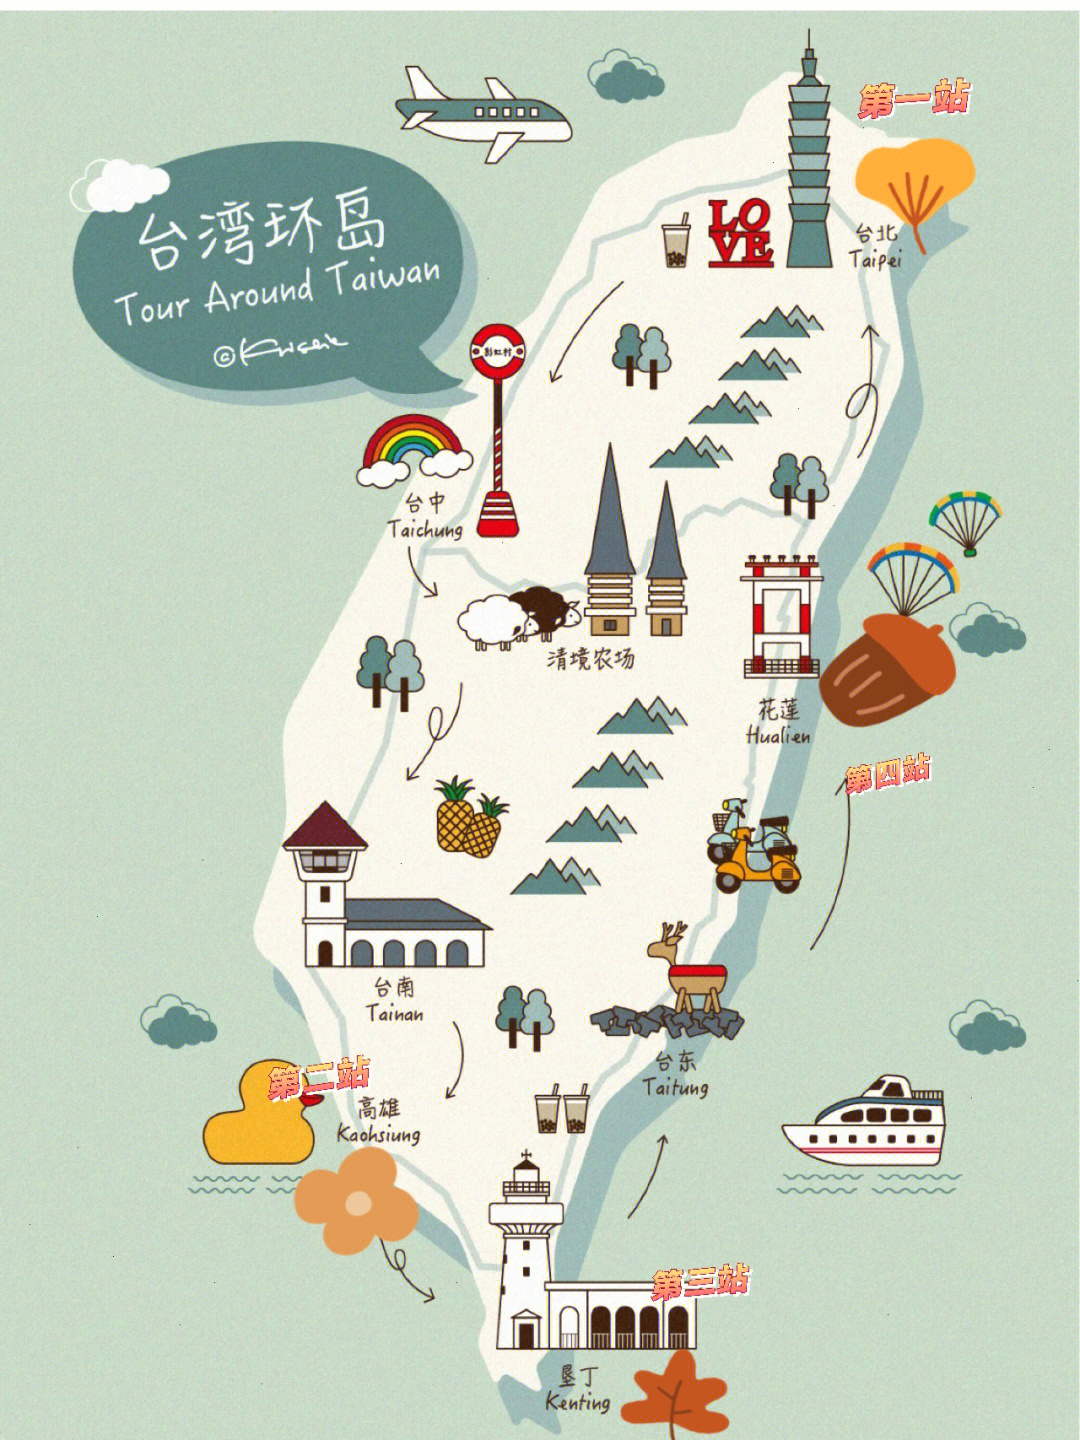 很多关于台湾旅游的帖子,不禁想起2015年的夏天我也去台湾环岛了10天